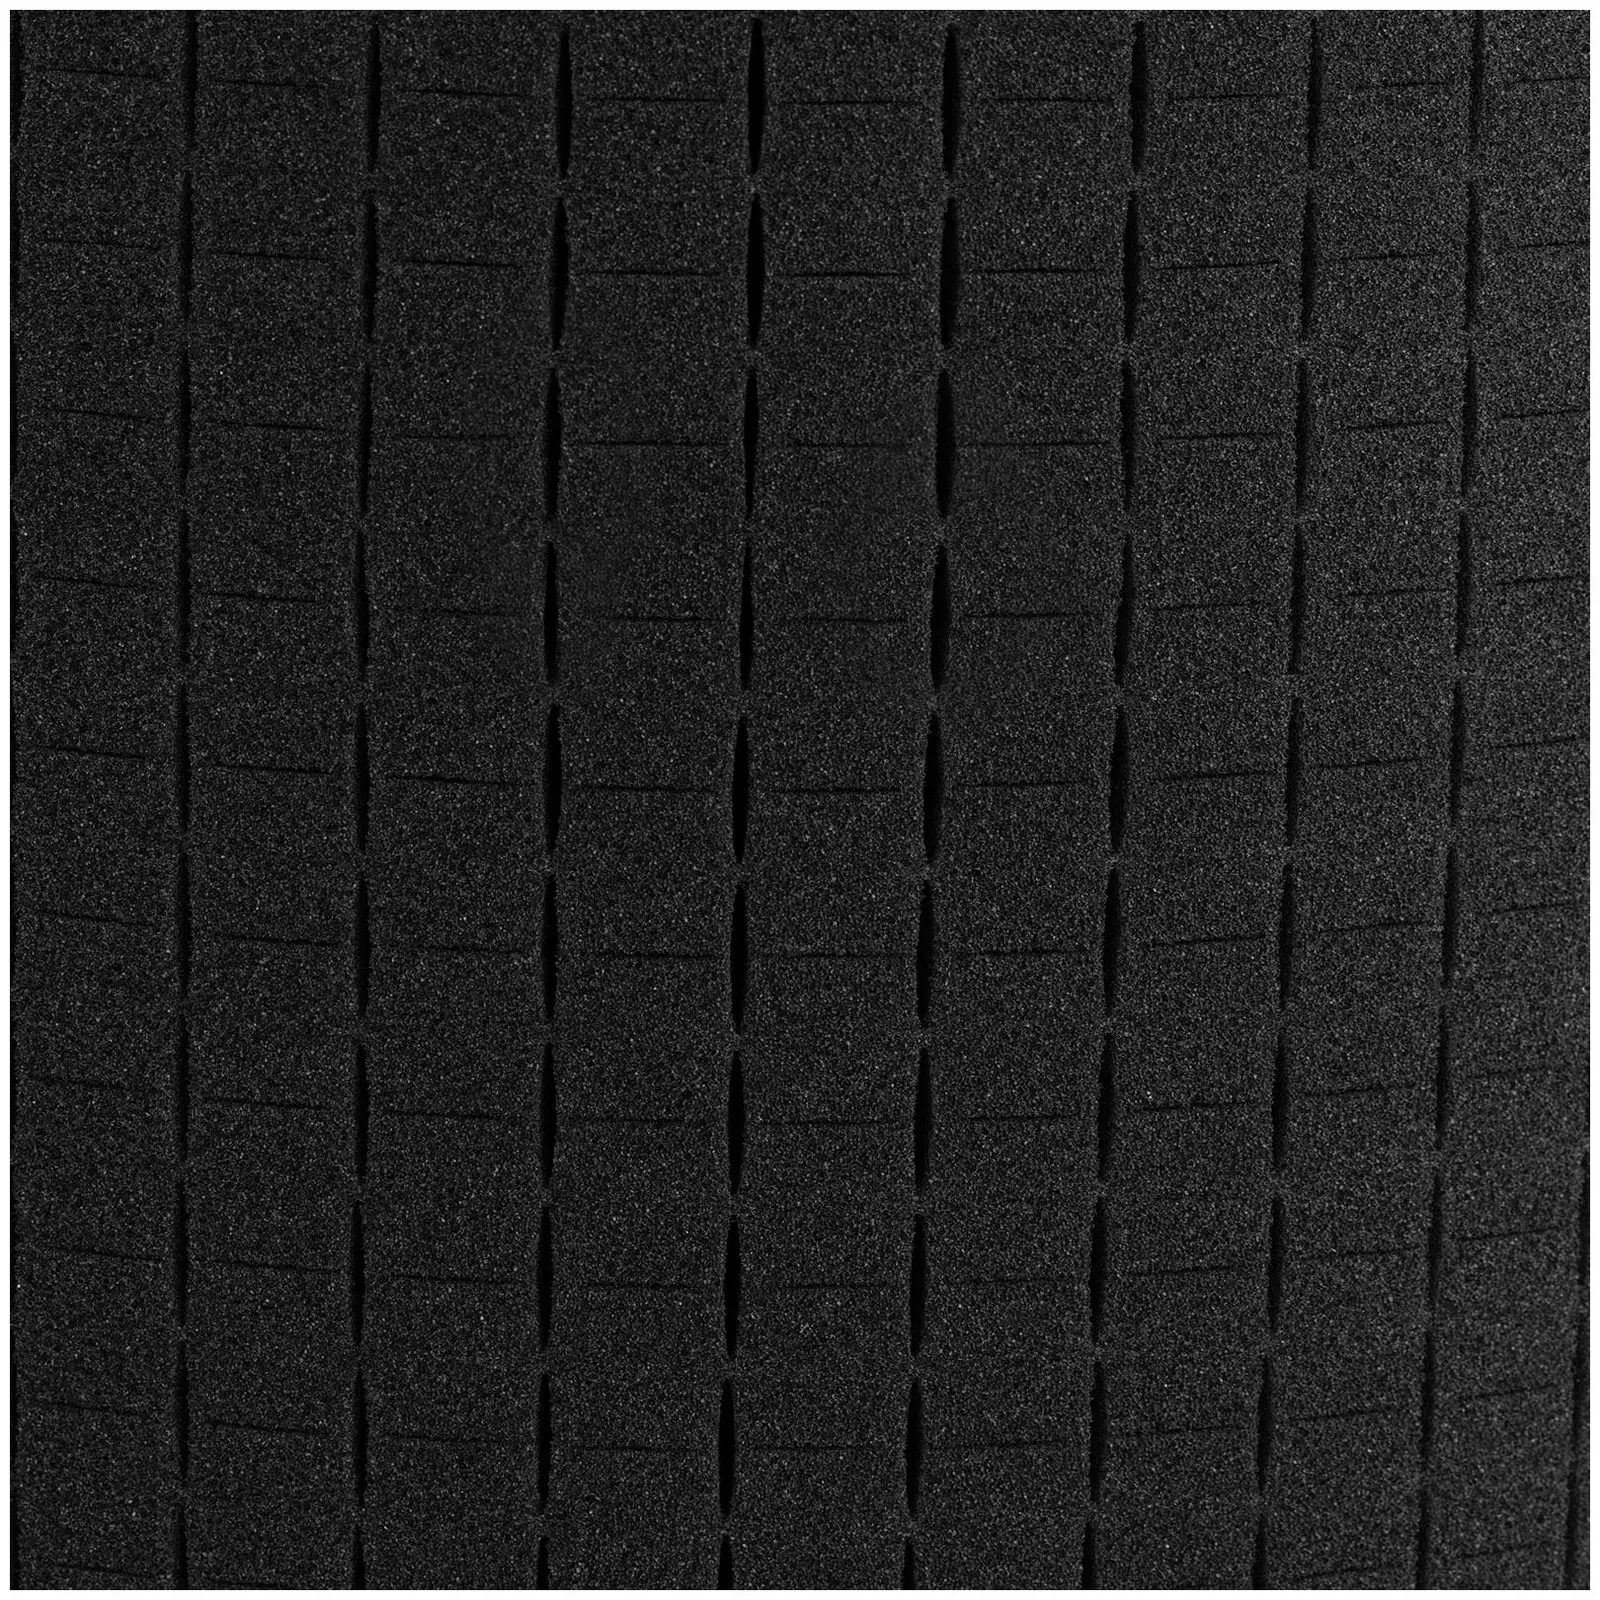 Fotokoffer - universell einsetzbar - wasserfest - 2 l - schwarz - 23,5 x 18,8 x 9,6 cm